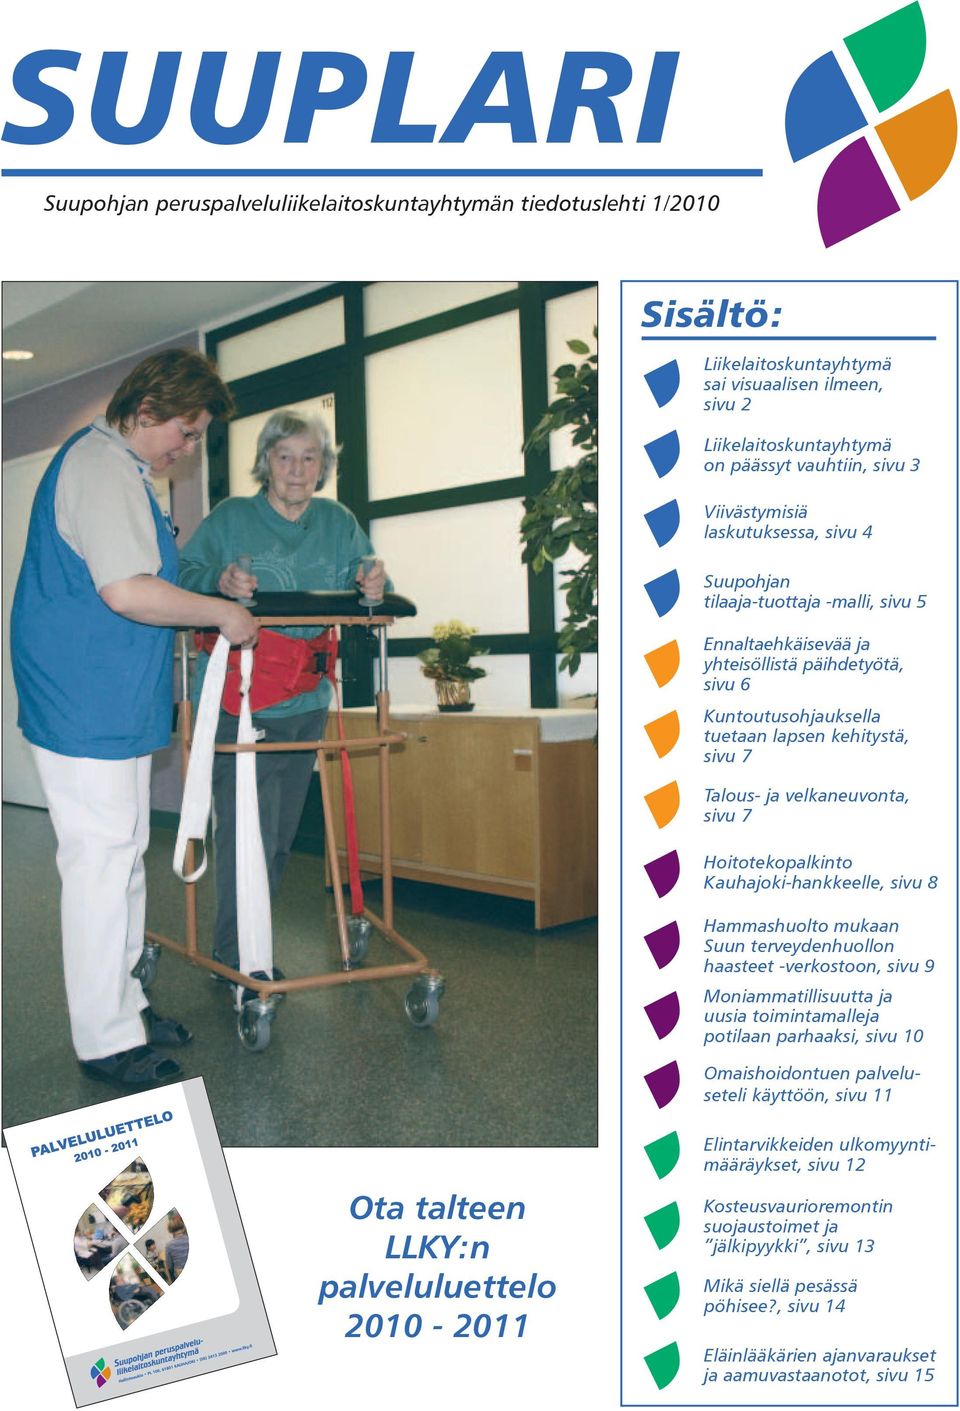 velkaneuvonta, sivu 7 Hoitotekopalkinto Kauhajoki-hankkeelle, sivu 8 Hammashuolto mukaan Suun terveydenhuollon haasteet -verkostoon, sivu 9 Moniammatillisuutta ja uusia toimintamalleja potilaan